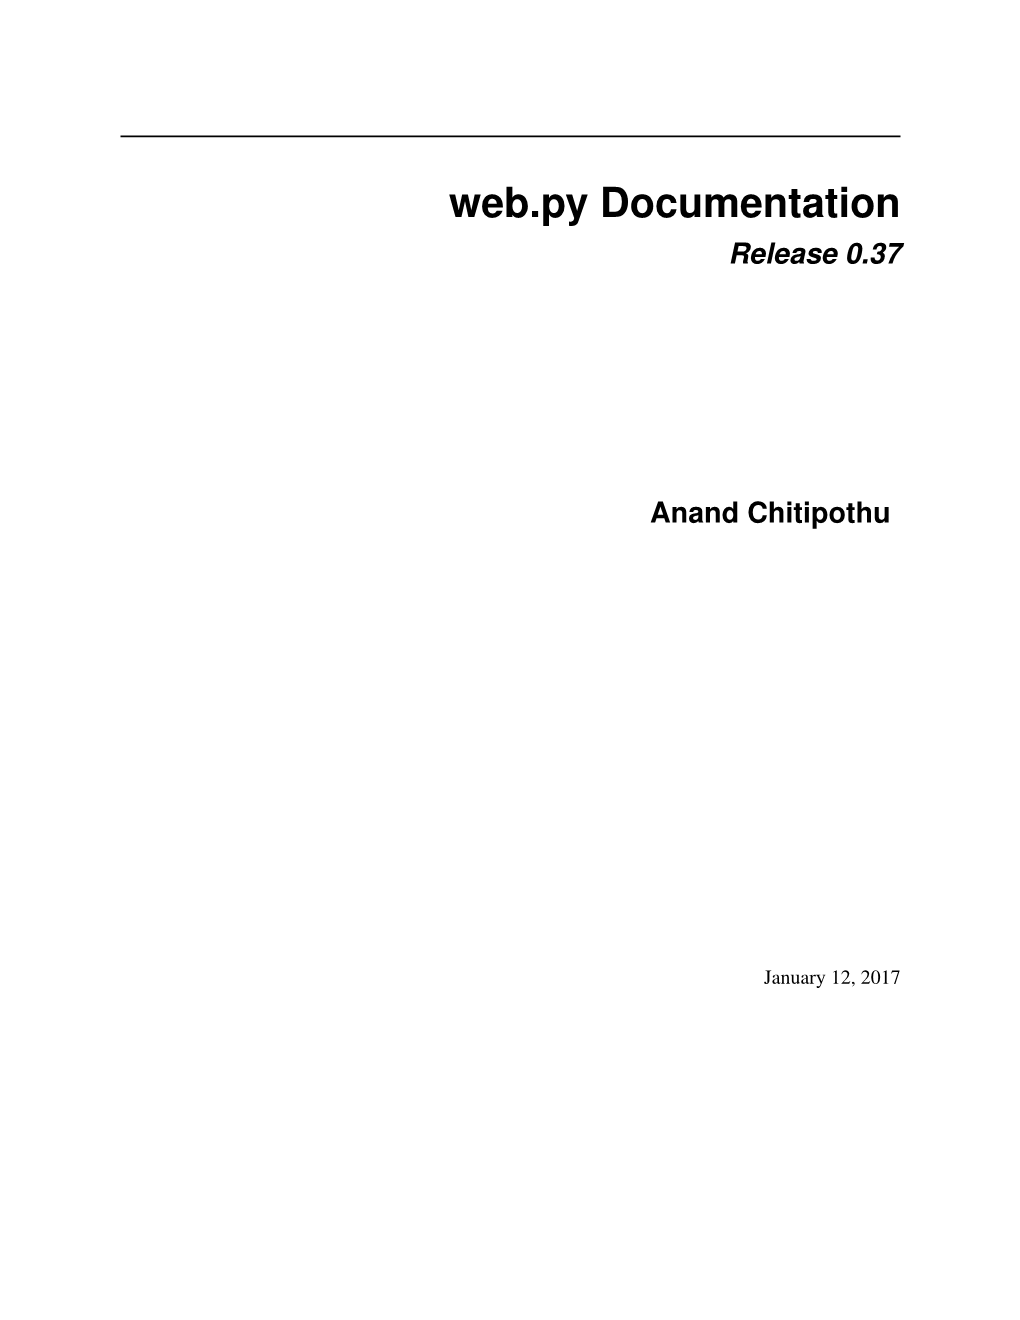 Web.Py Documentation Release 0.37